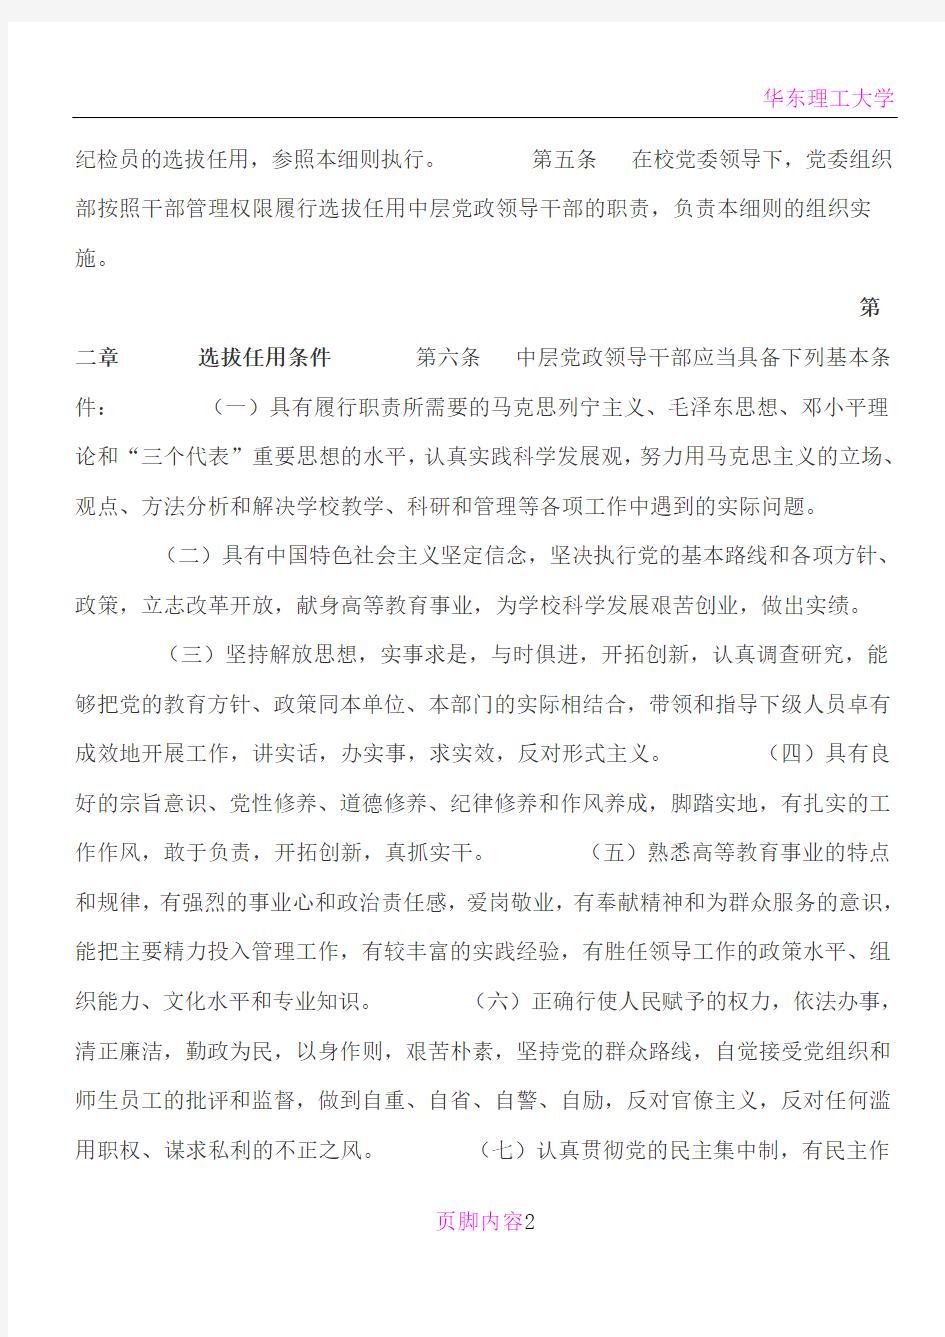 华东理工大学中层党政领导干部选拔任用工作实施细则